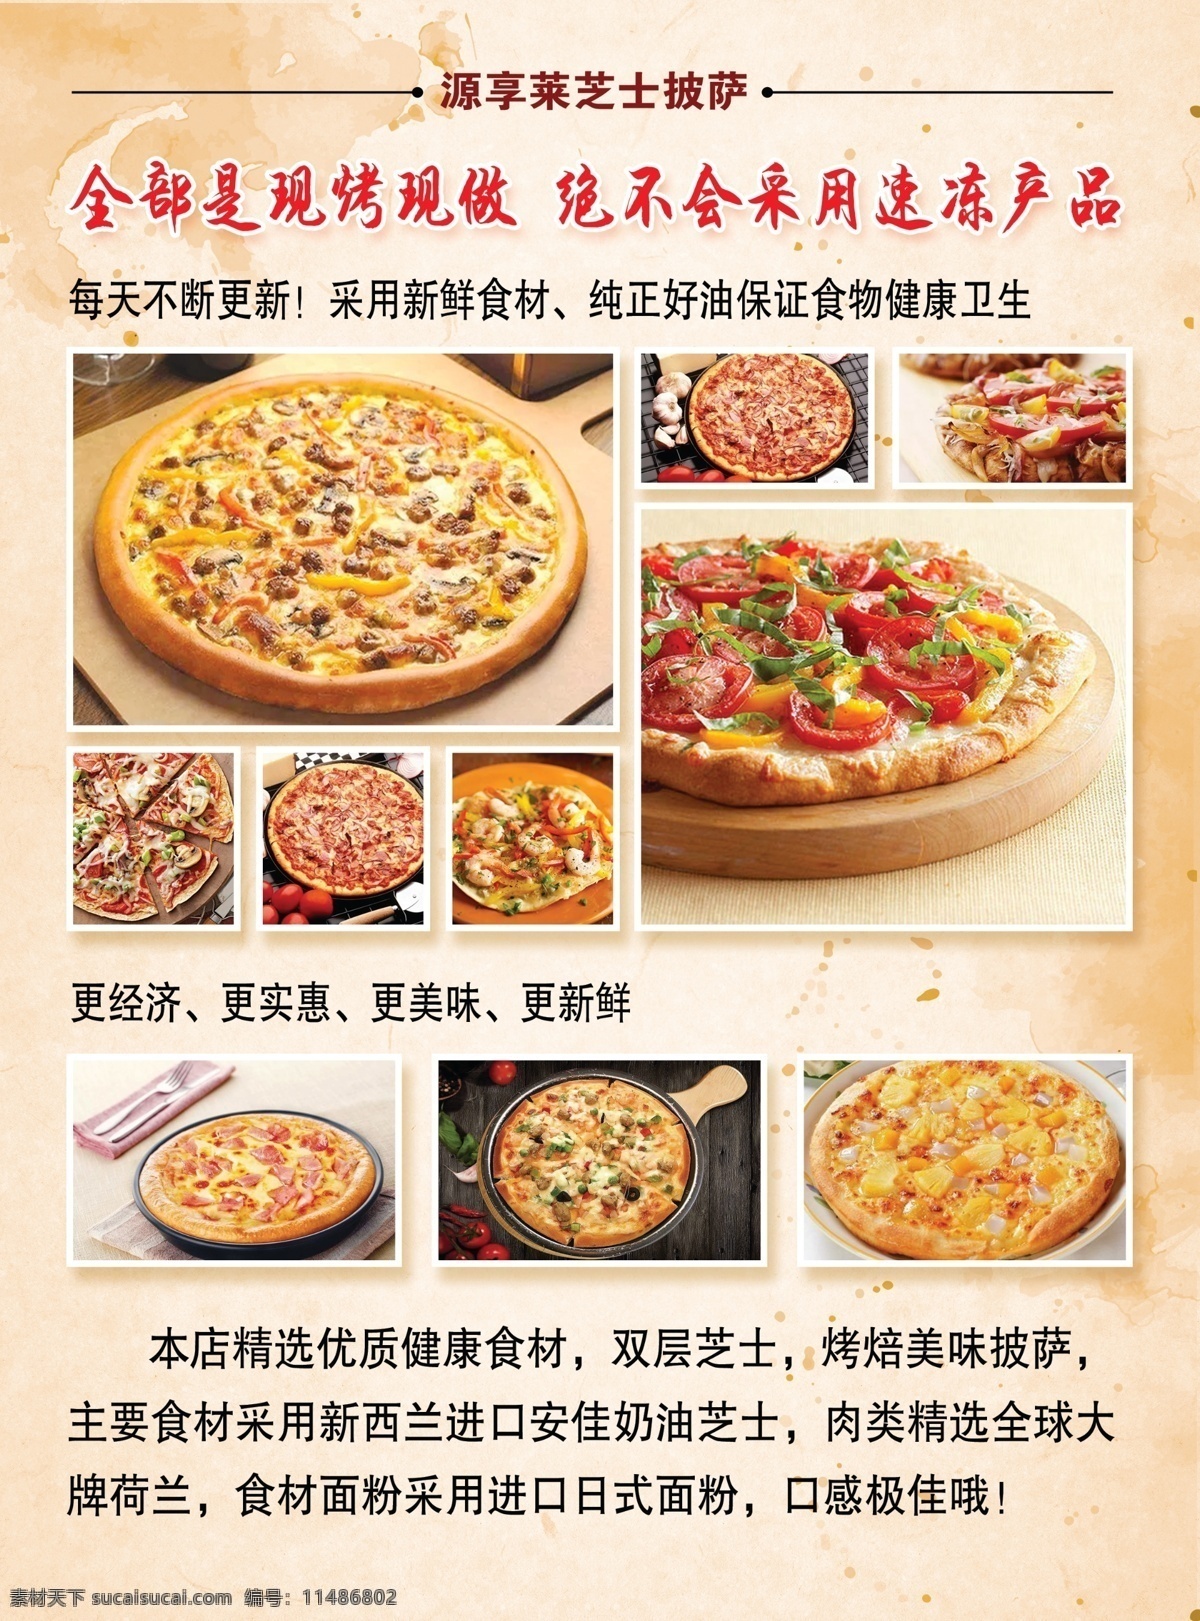 源 享 莱 芝士 披萨 宣传单 页 新鲜 食材 纯正 食物 健康 卫生 展板模板